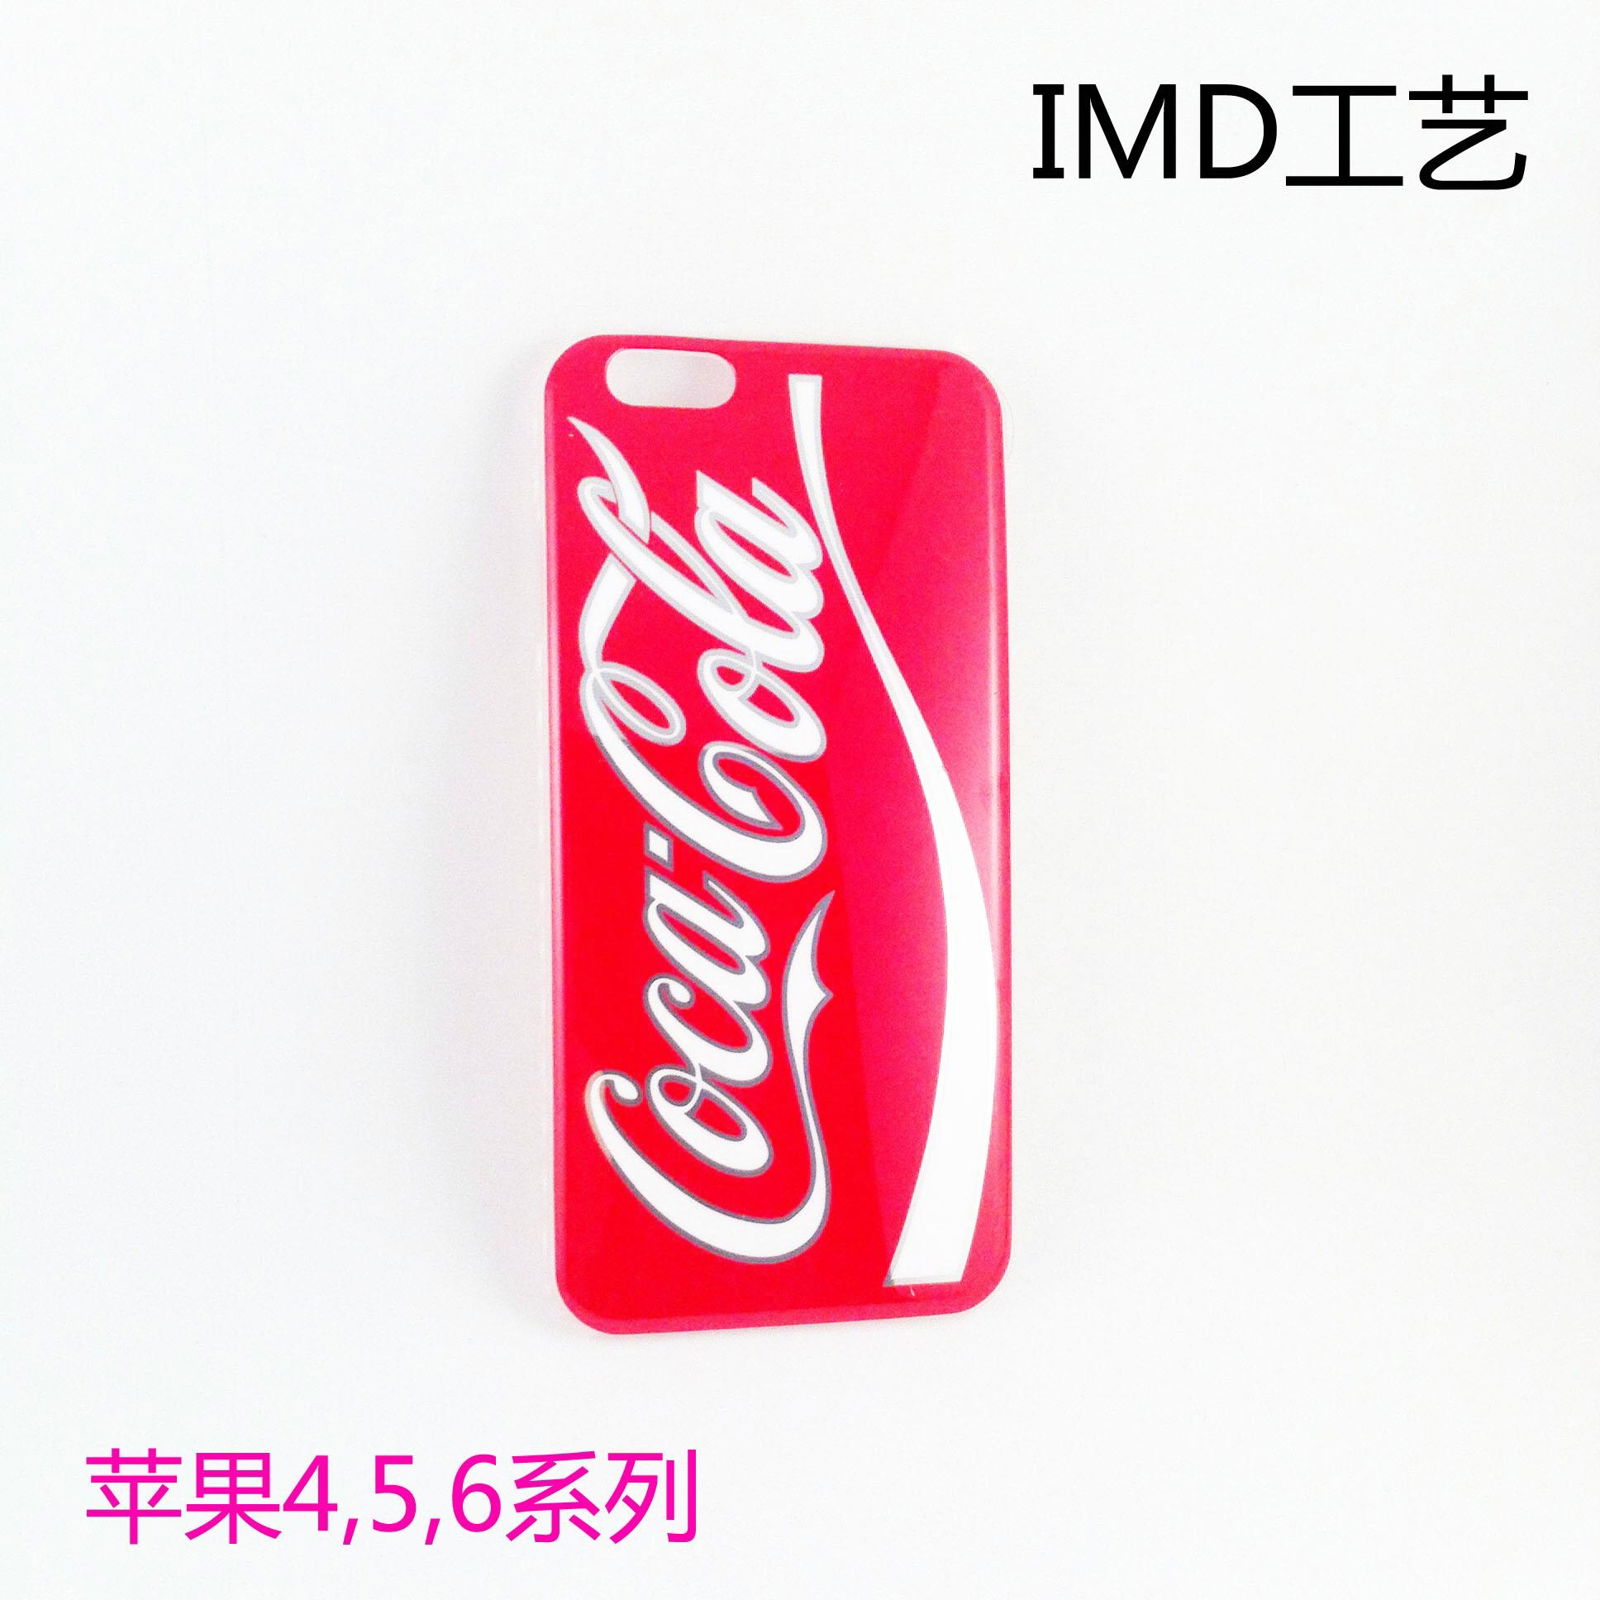 苹果6 plus手机壳 iphone6手机保护套 来图定制 可口可乐 IMD 4